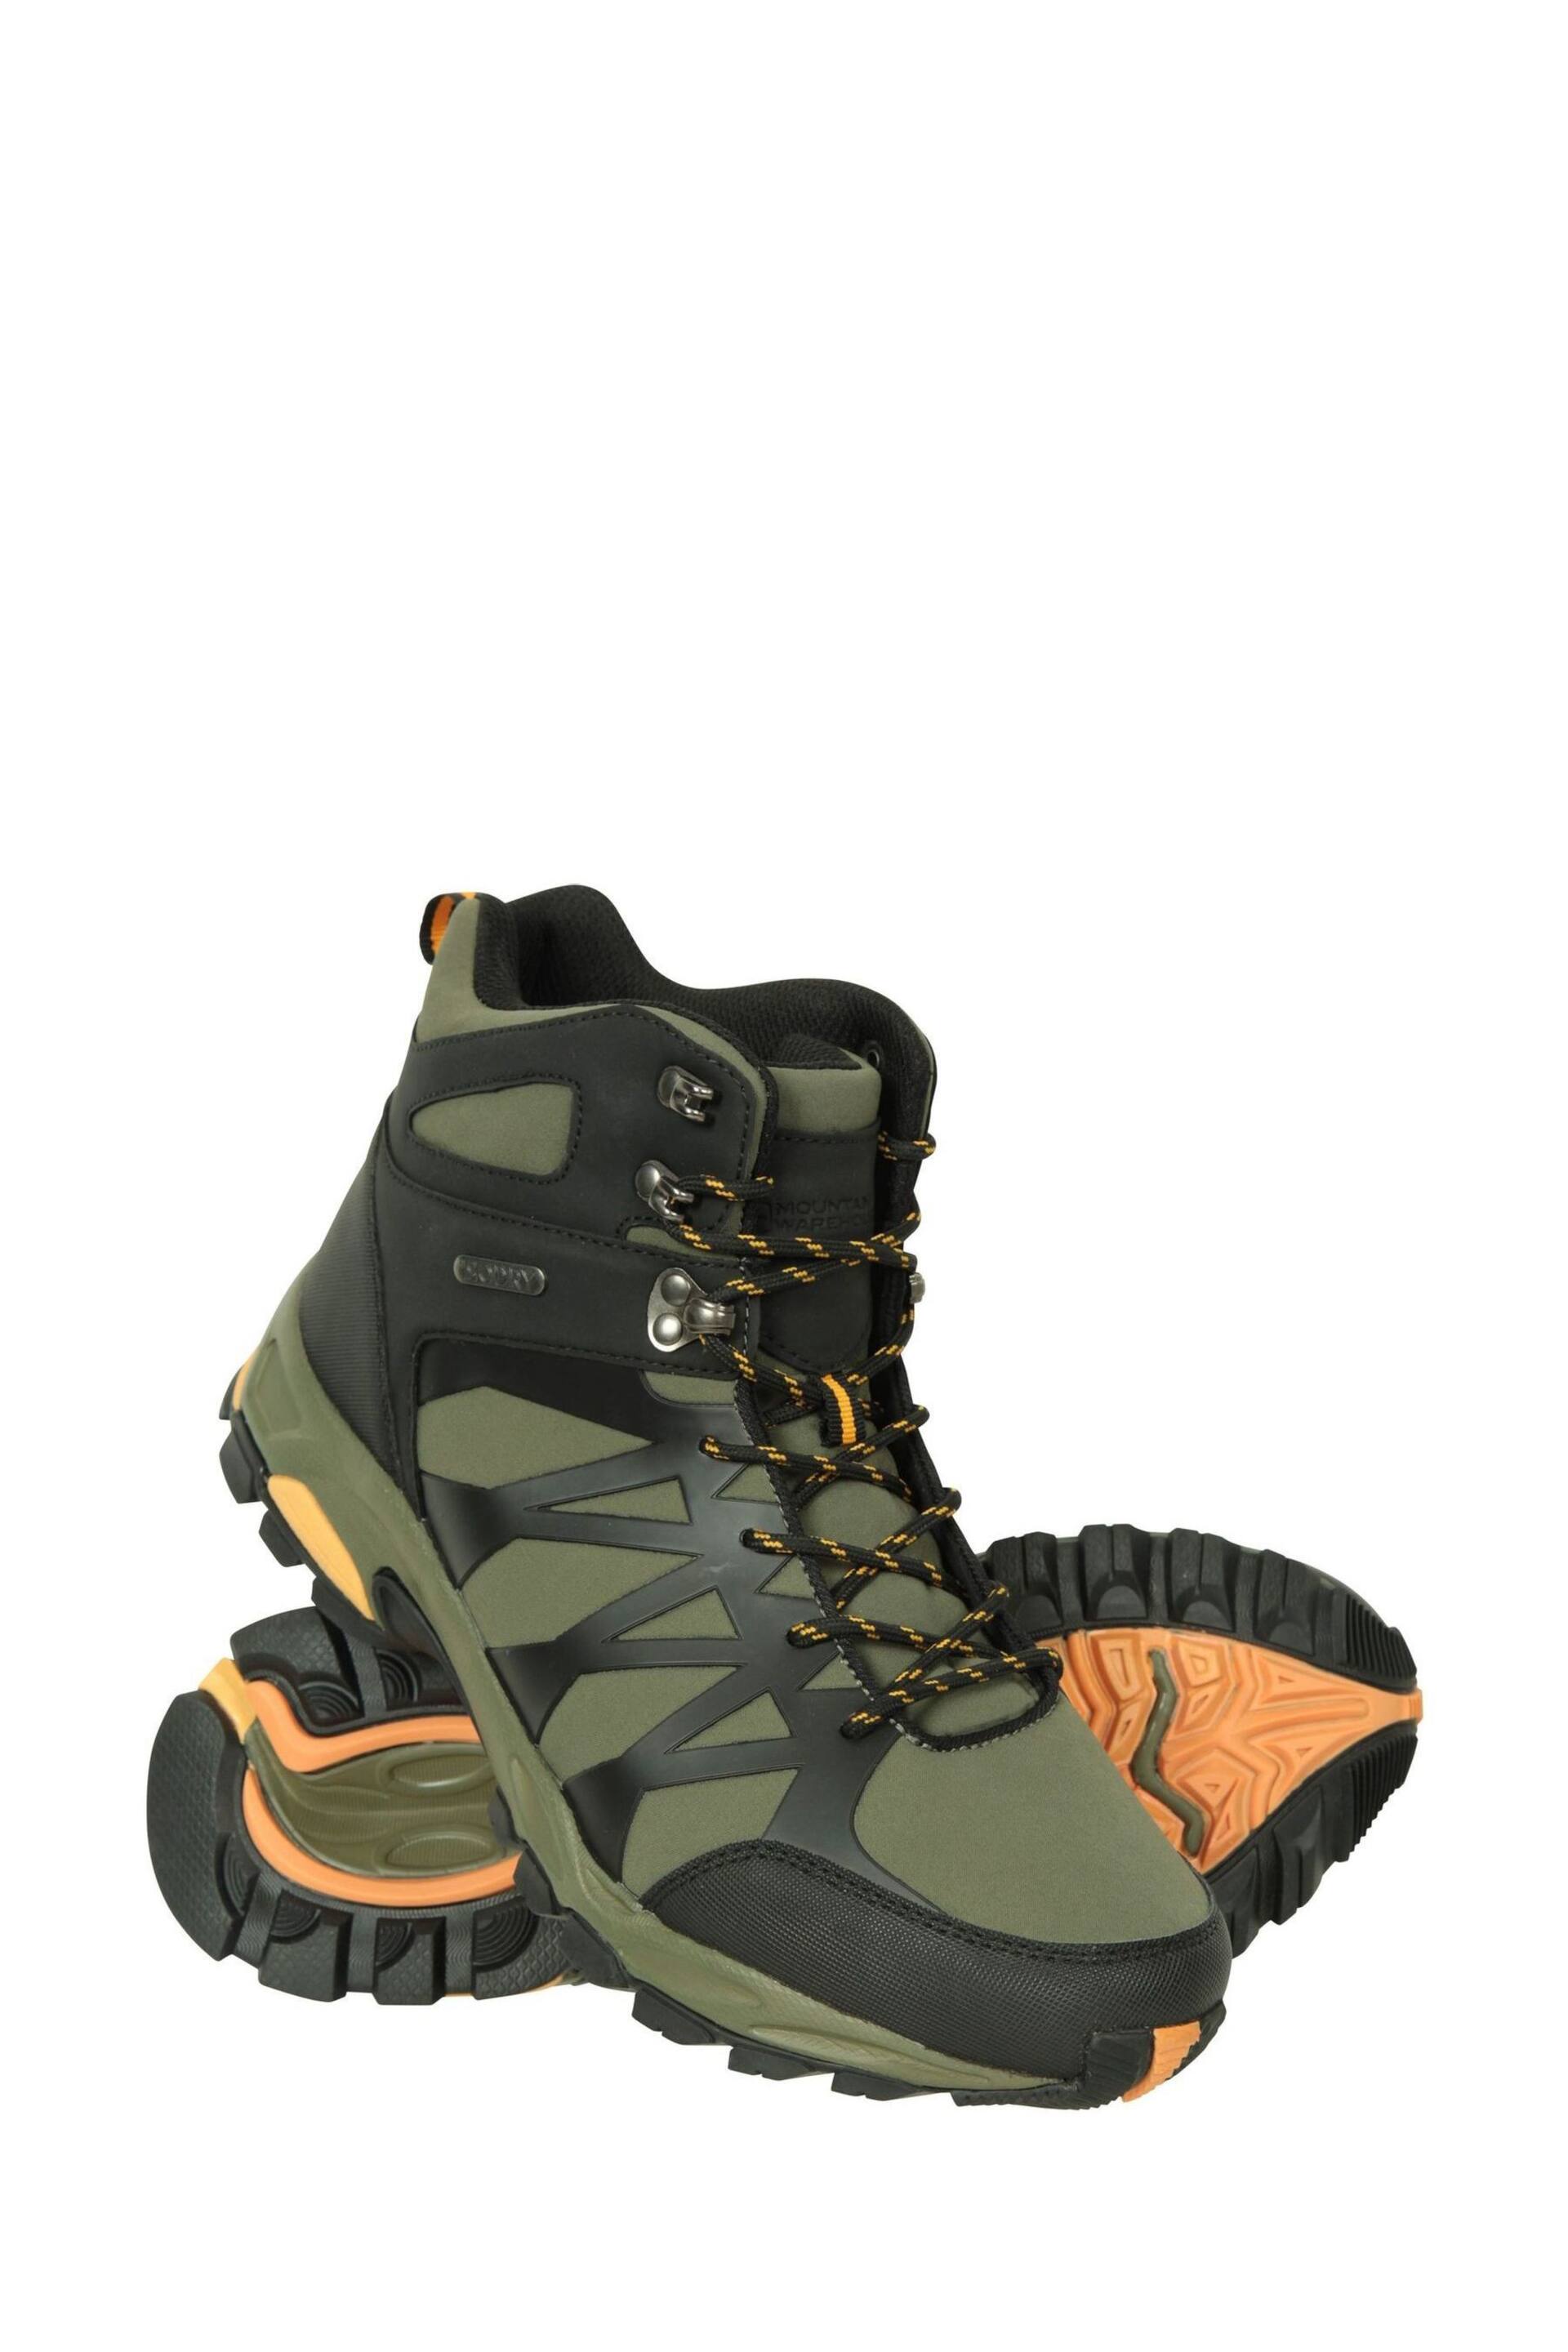 Mountain Warehouse Green Mens Trekker II Waterproof Softshell Walking Boots - Image 1 of 5